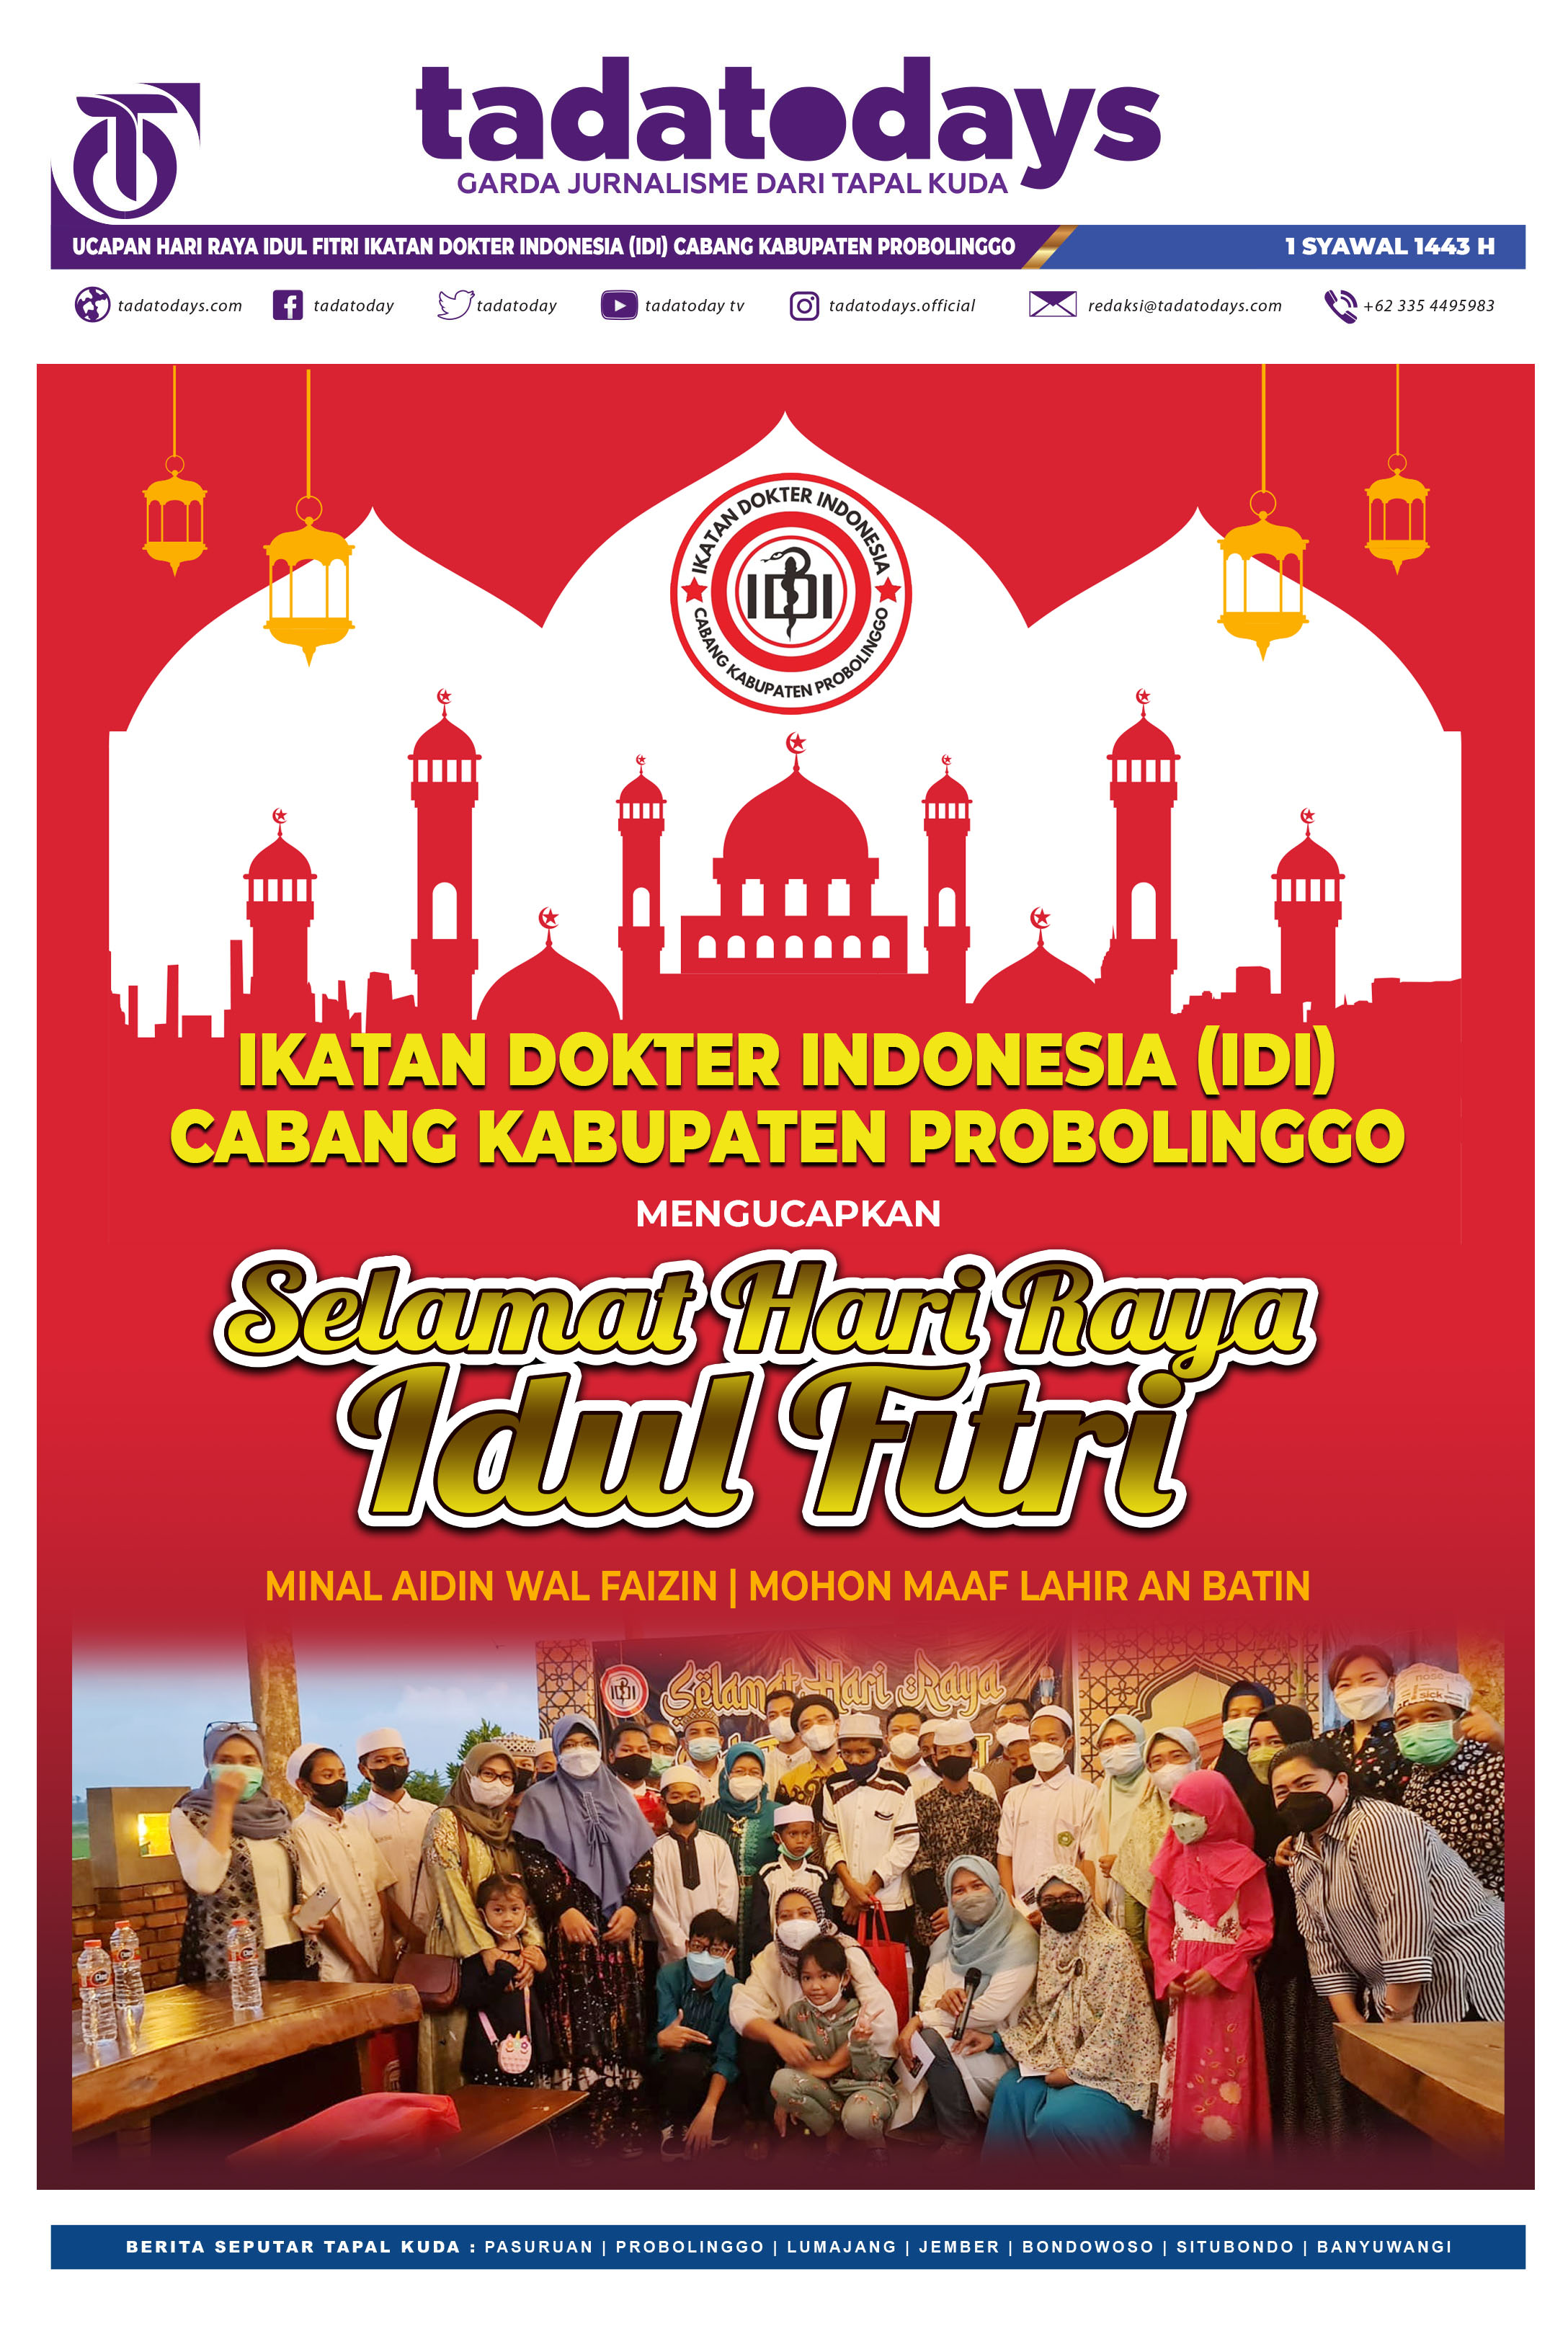 IDI Cabang Kabupaten Probolinggo; Selamat Hari Raya Idul Fitri 1443 H